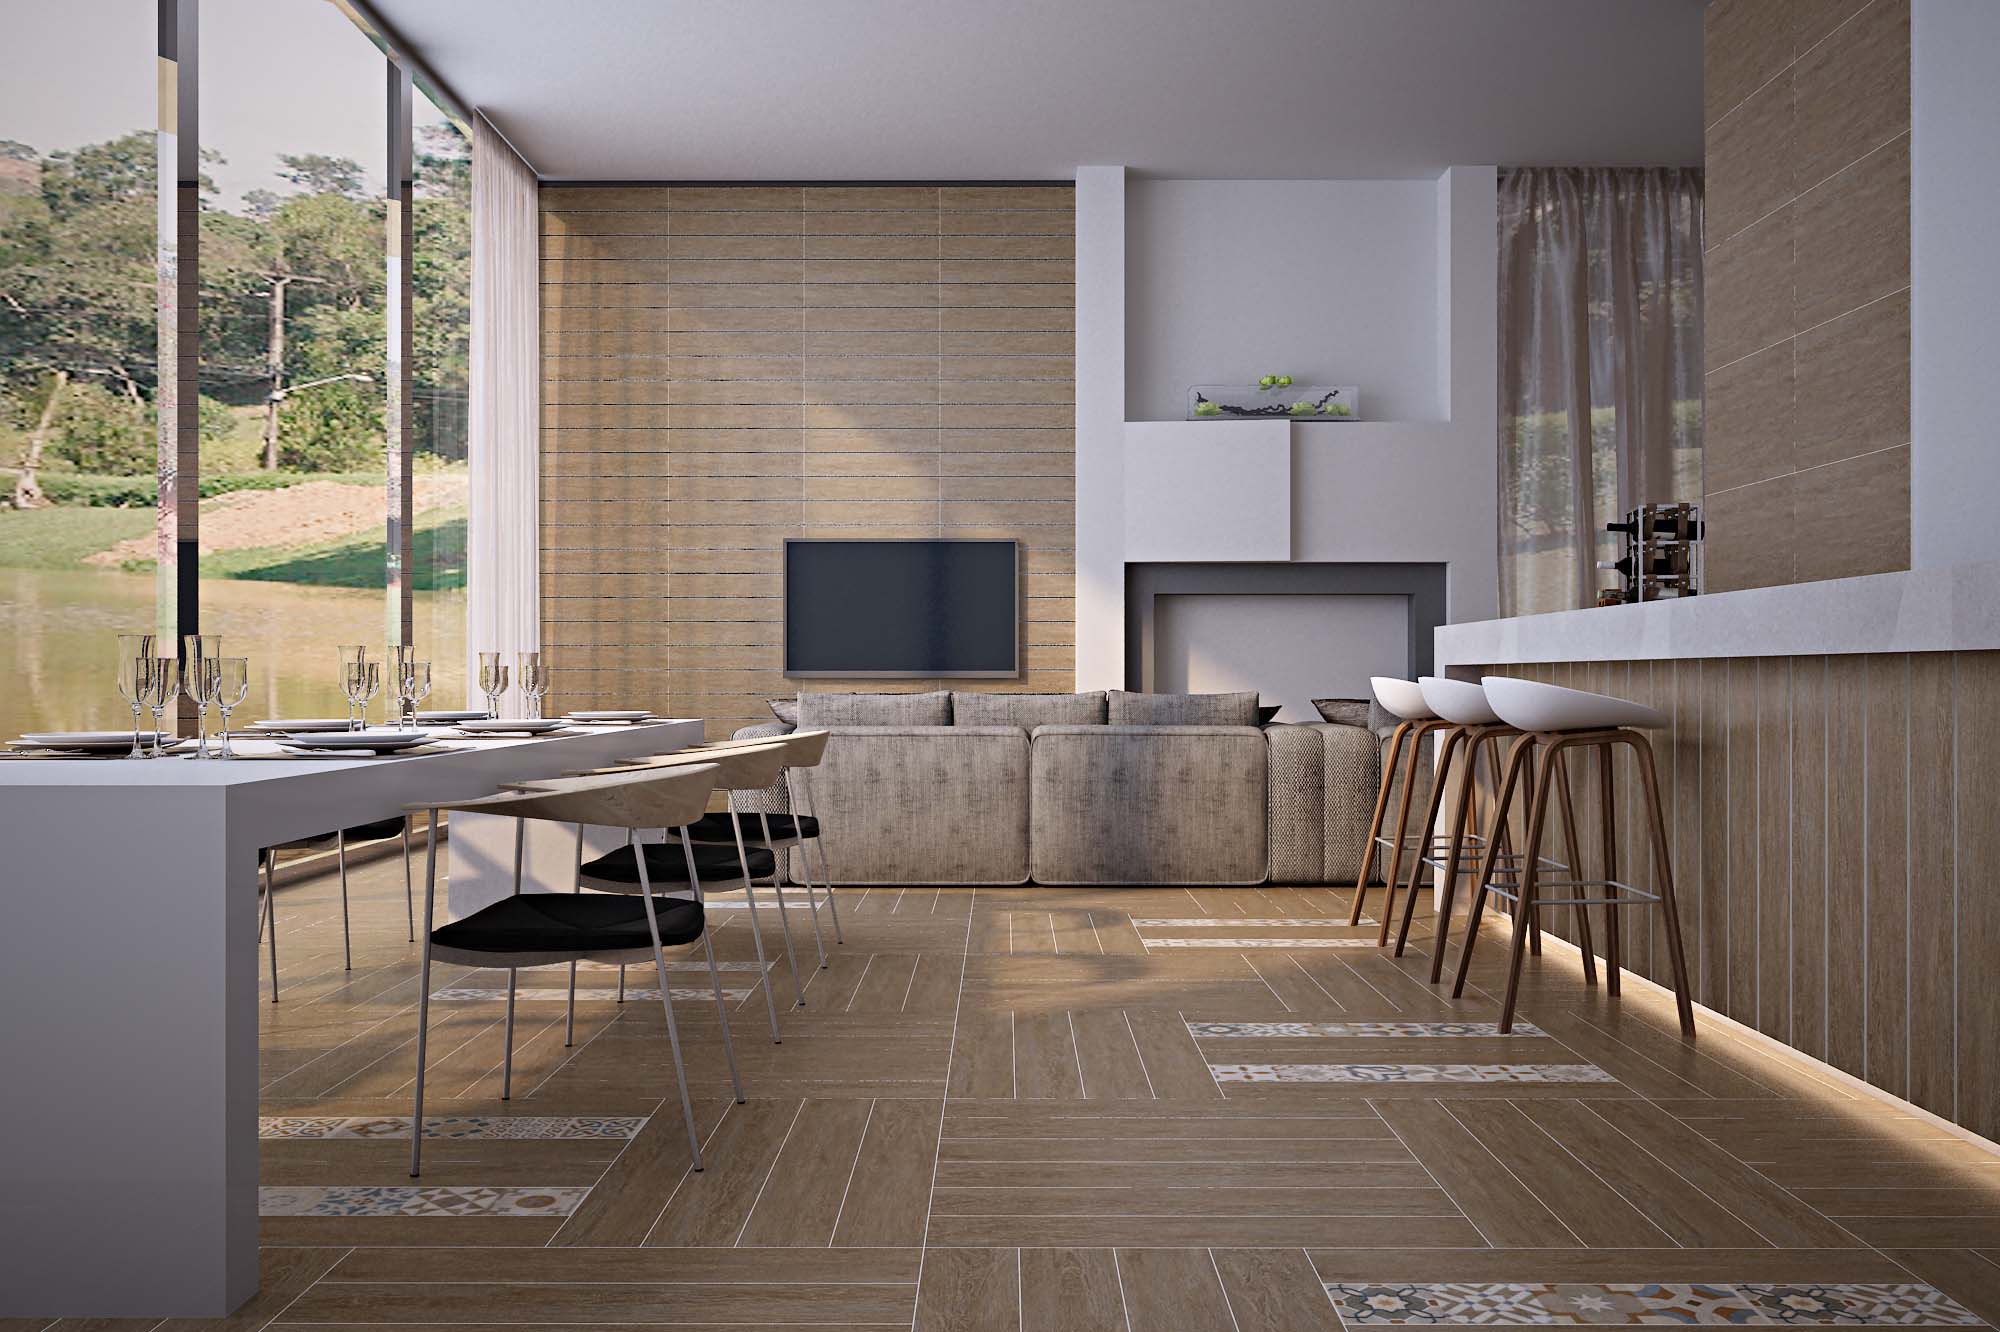 大米乐m6
陶瓷新品丨时尚木纹砖，让家拥有自然的温度
